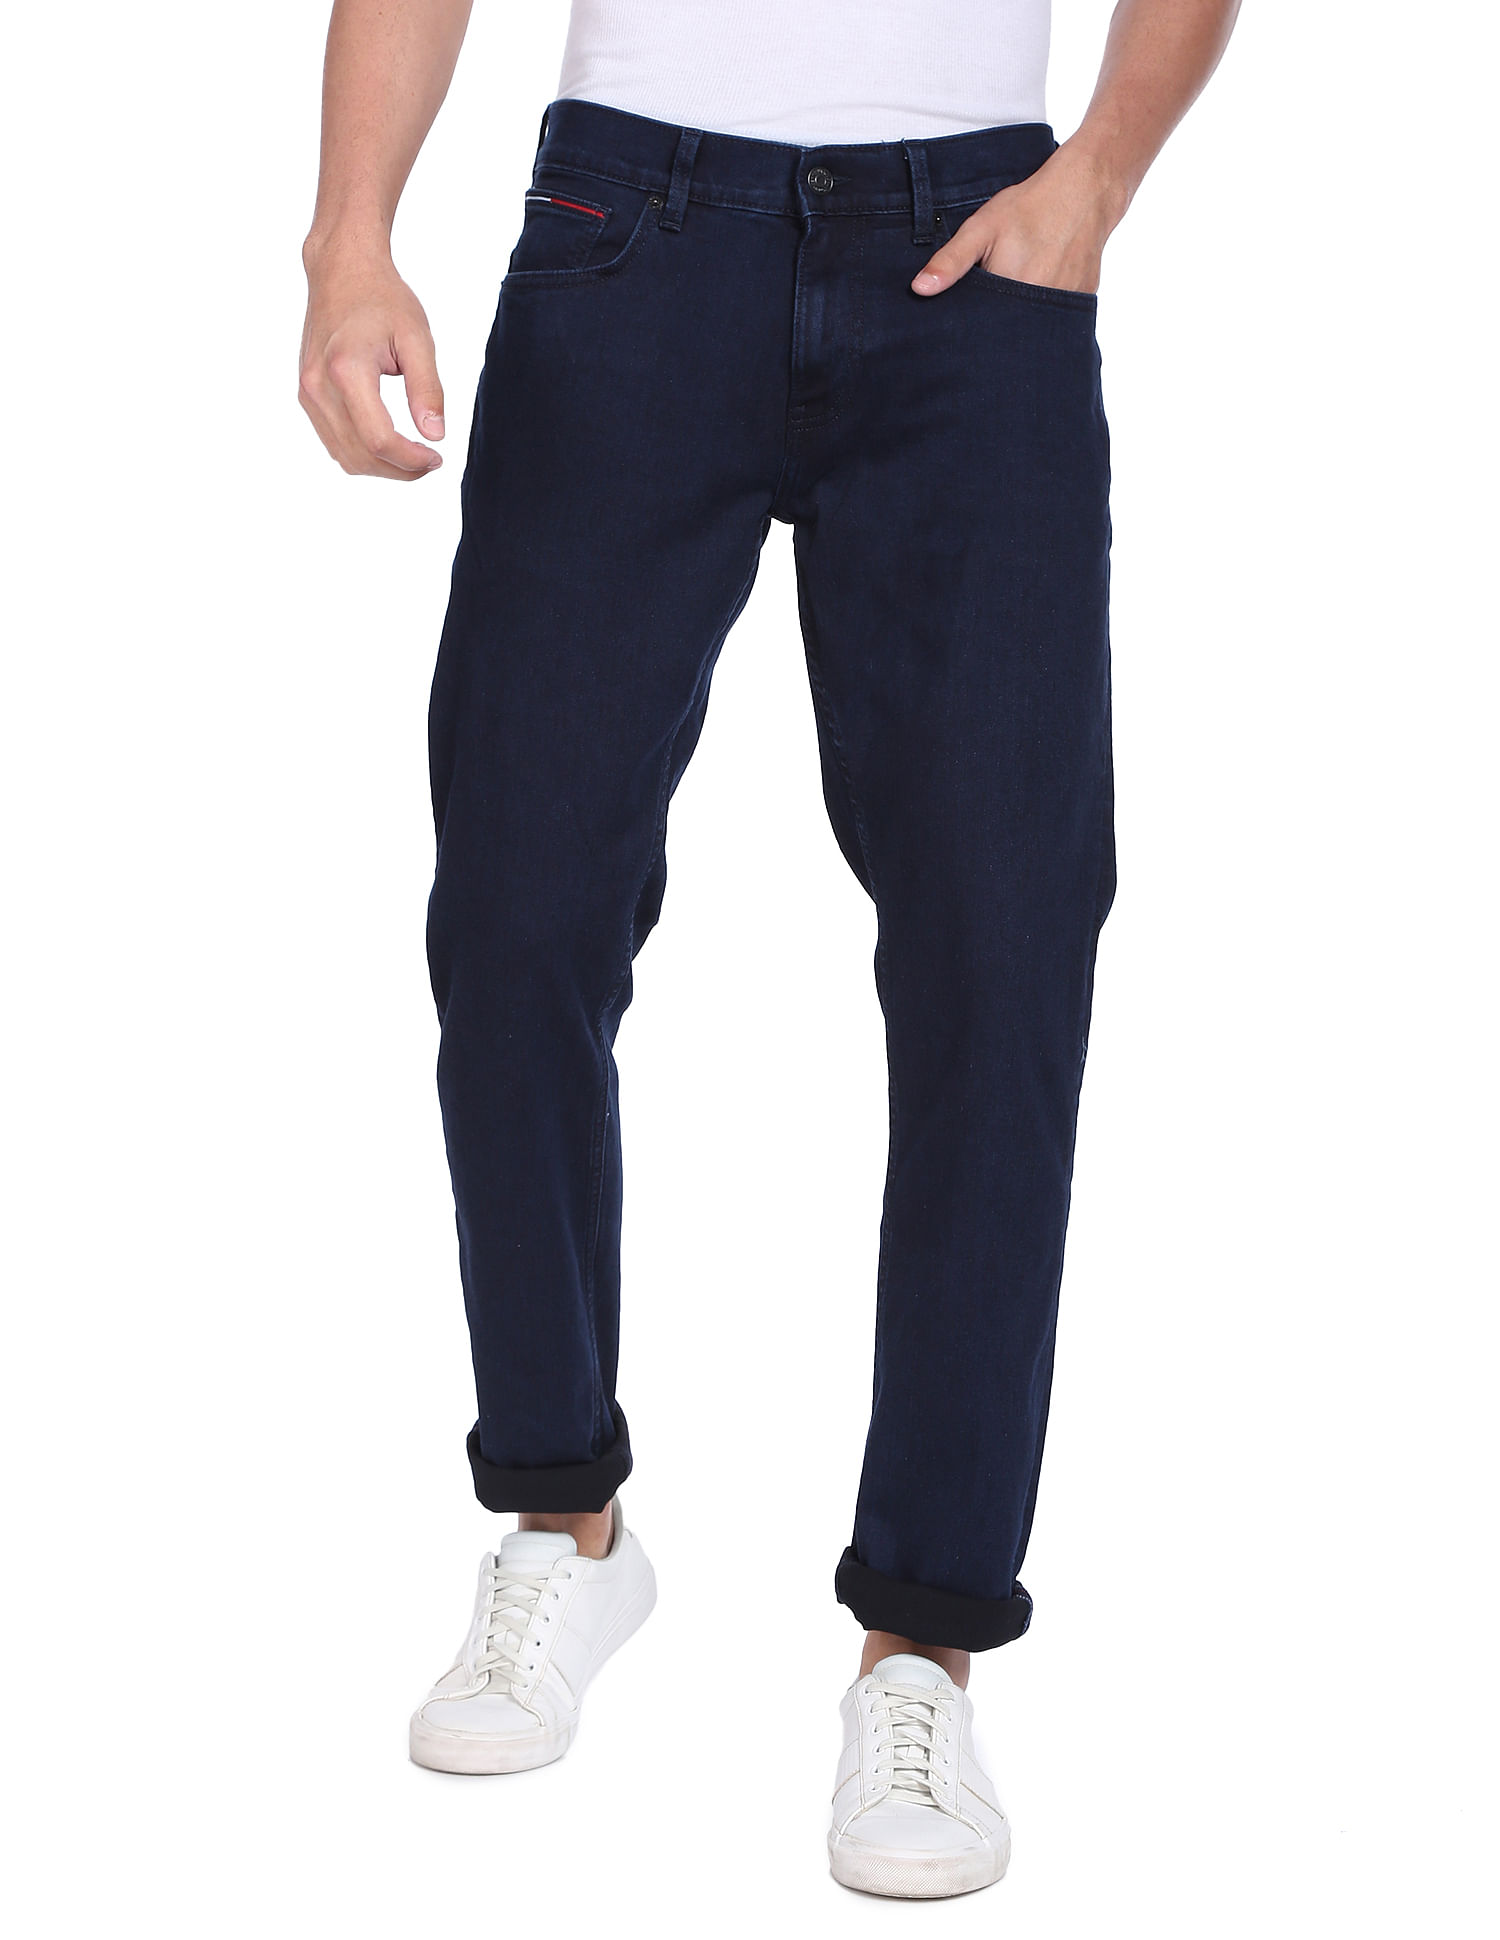 Tommy Hilfiger Jeans for Men, Online Sale up to 70% off